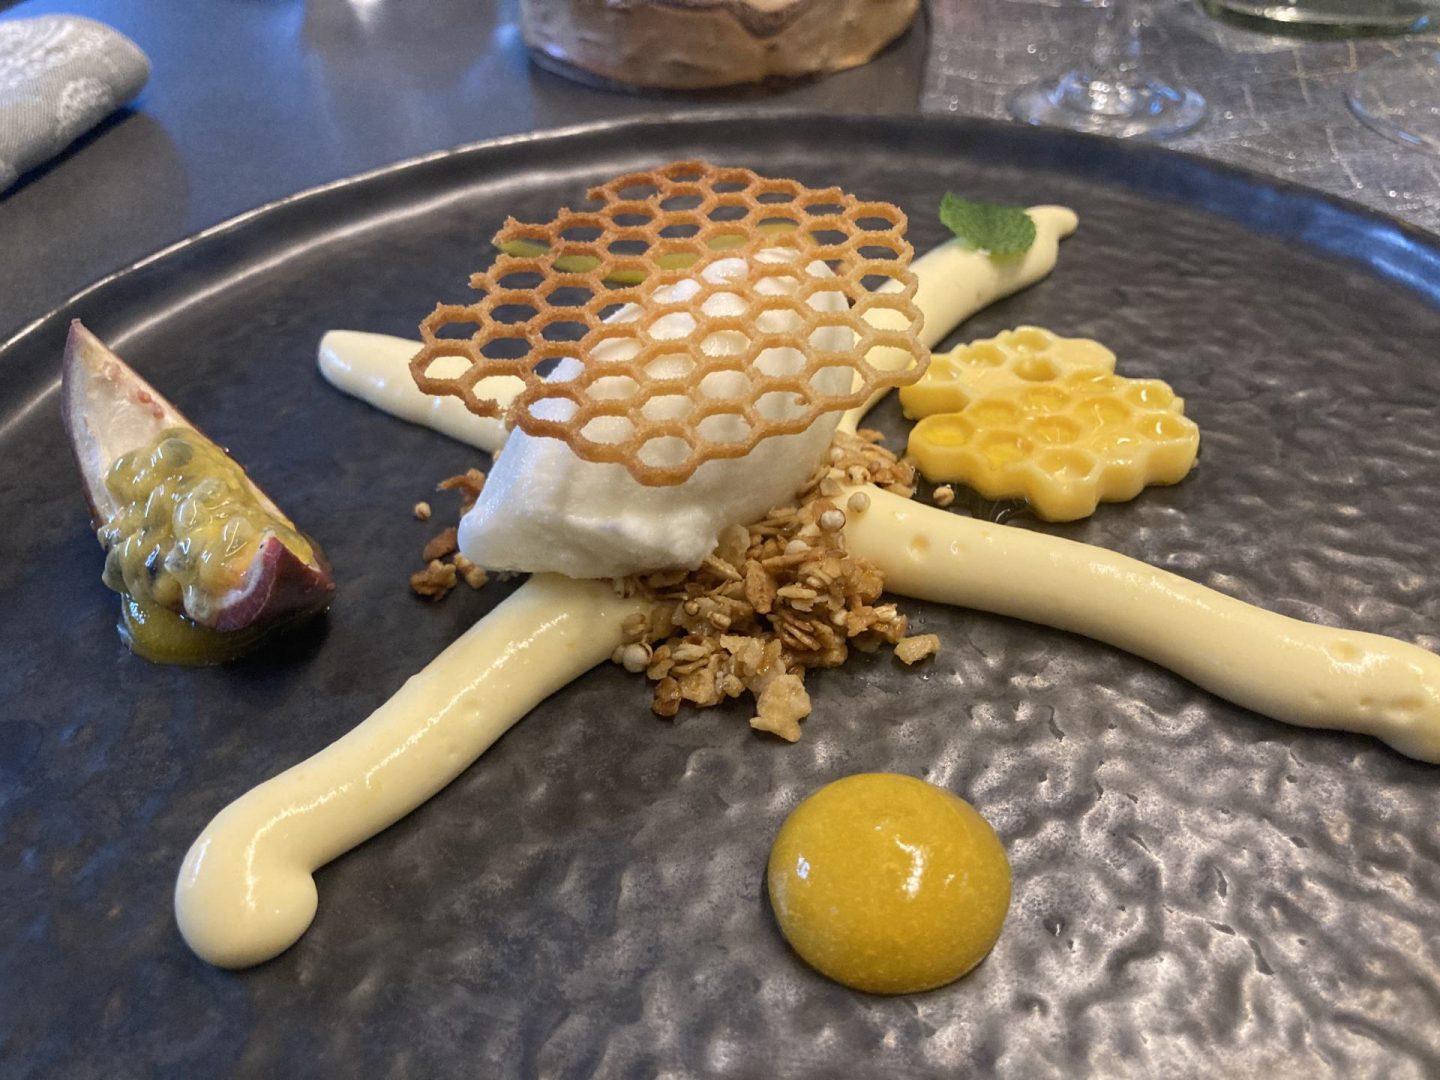 Erfahrung Bewertung Kritik Post Hotel See in Paznaun Dessert Honig Milch Passionsfrucht Foodblog Sternestulle